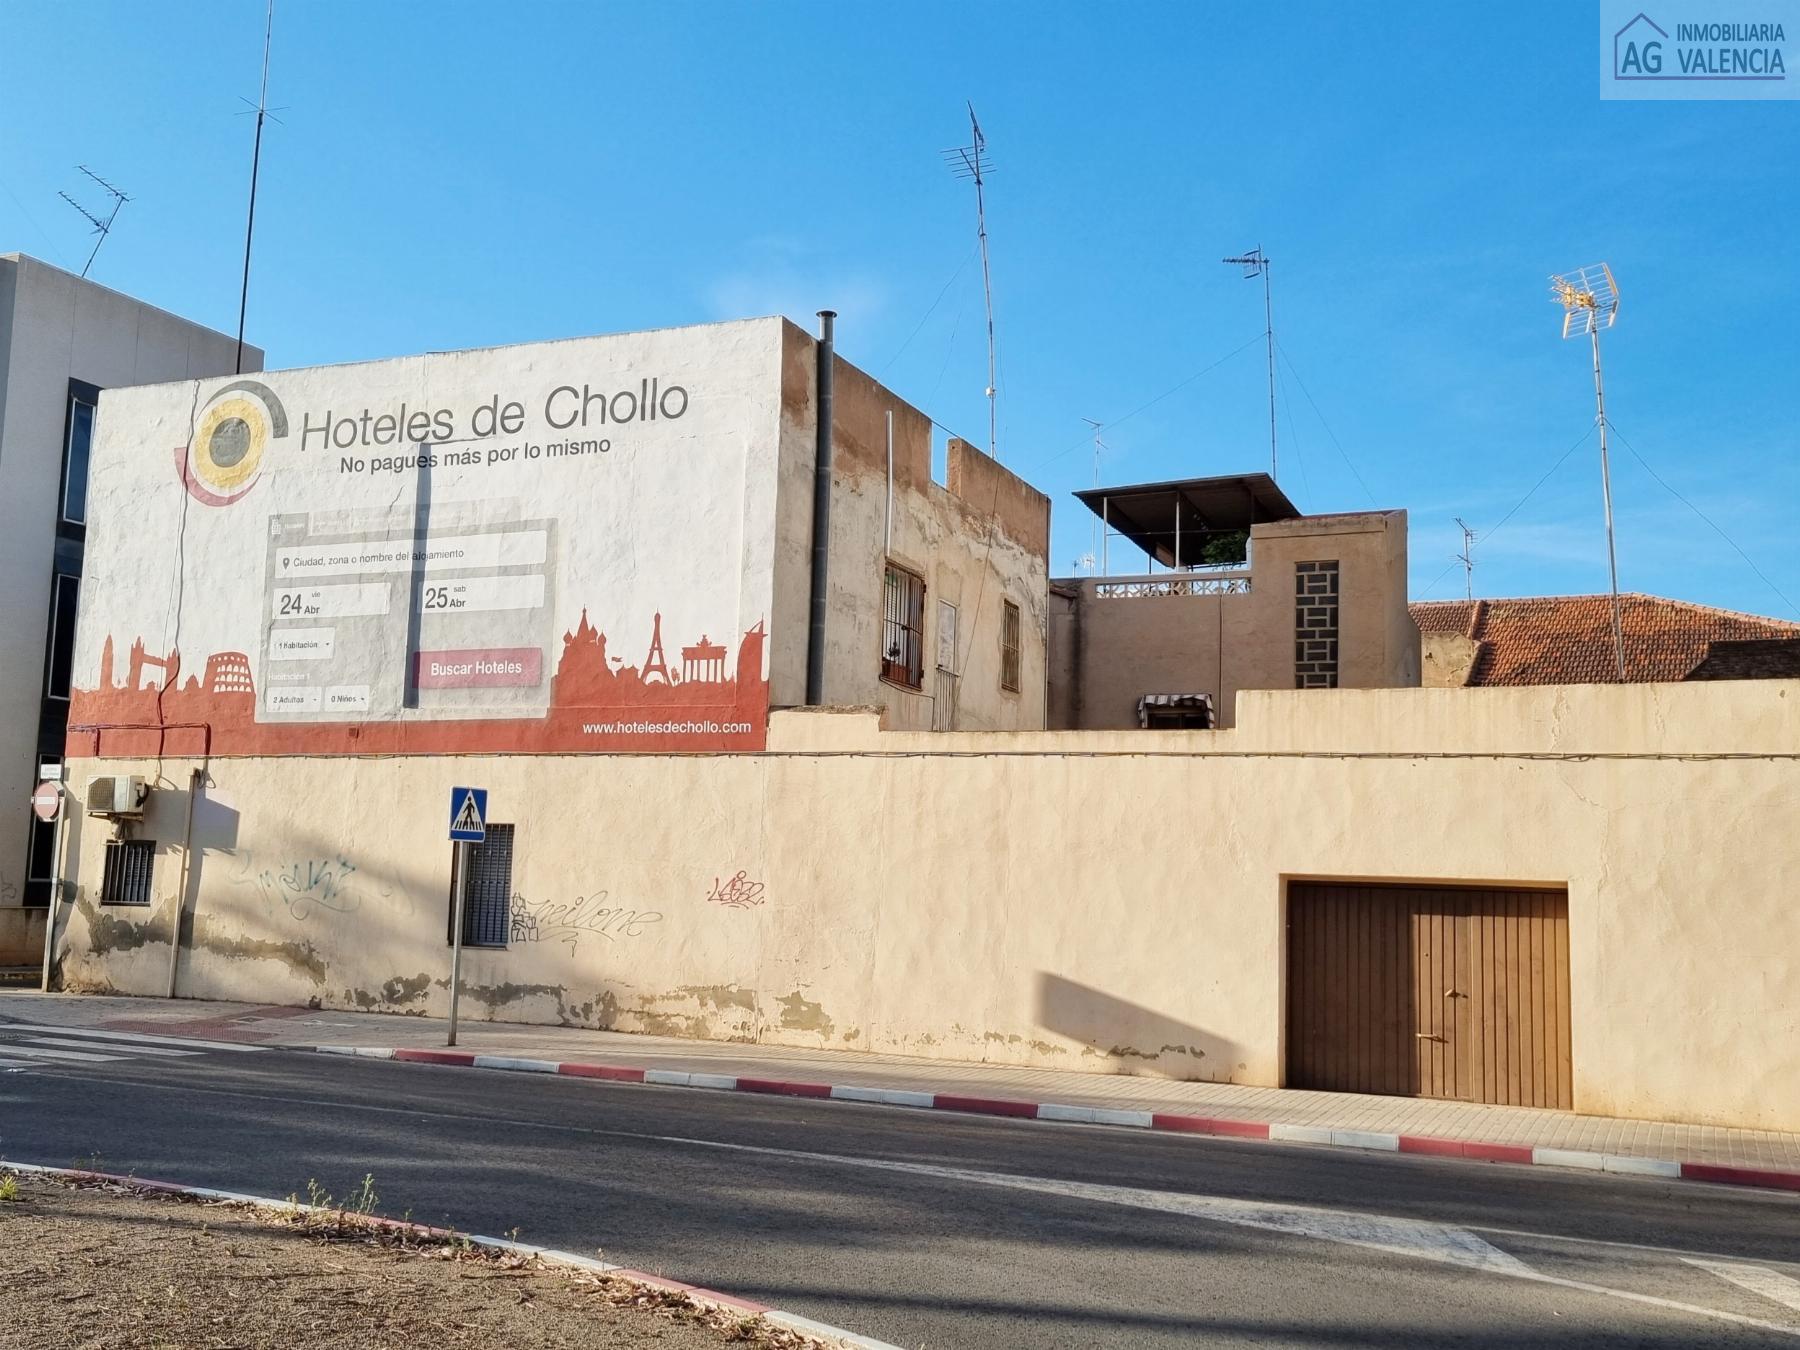 For sale of house in Puerto de Sagunto